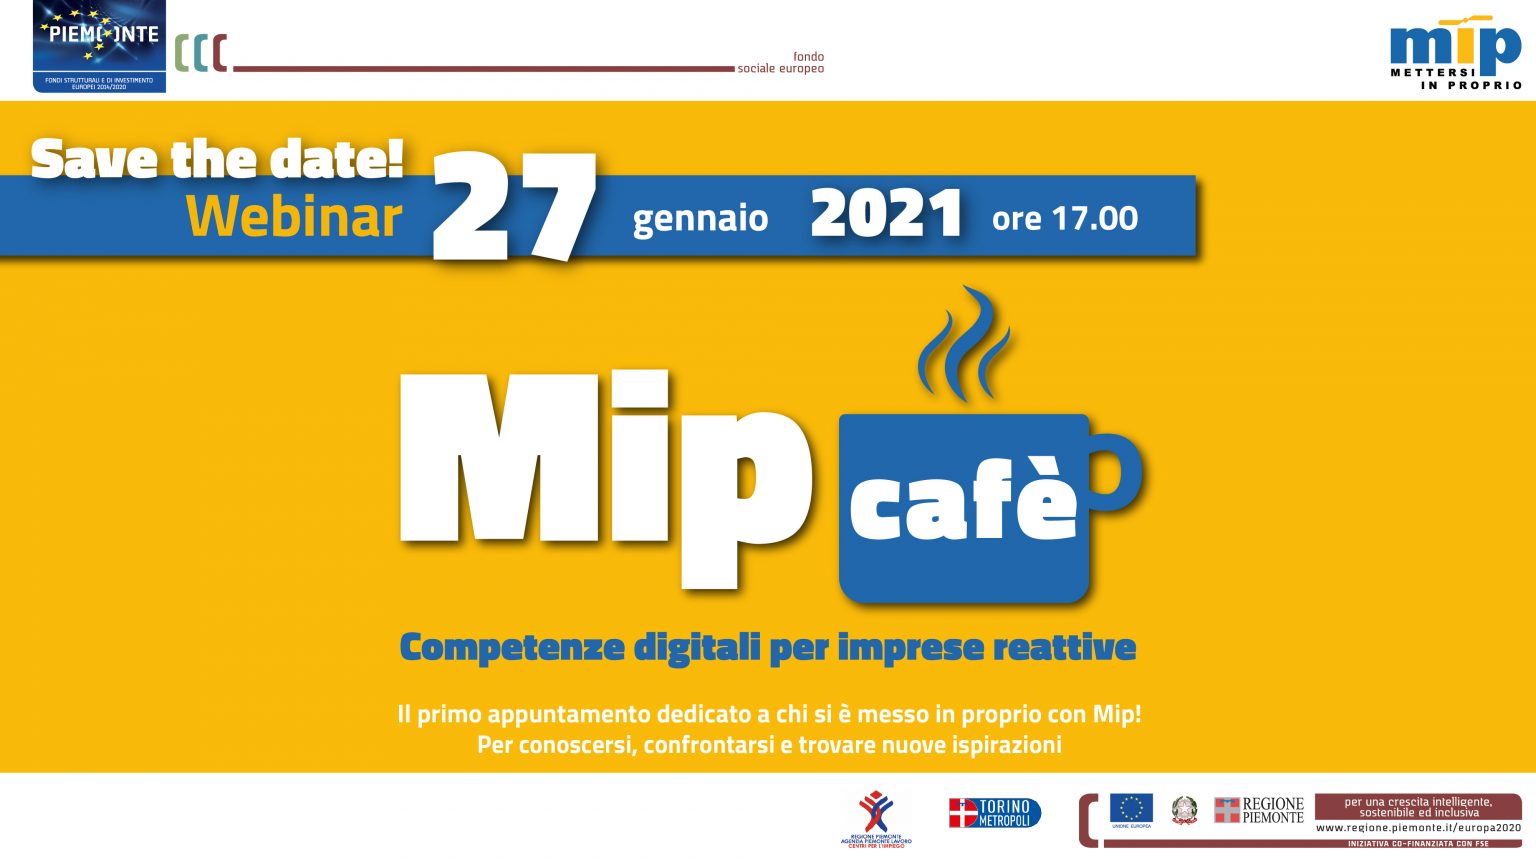 Entrepreneurs Connecting Virtually in Torino